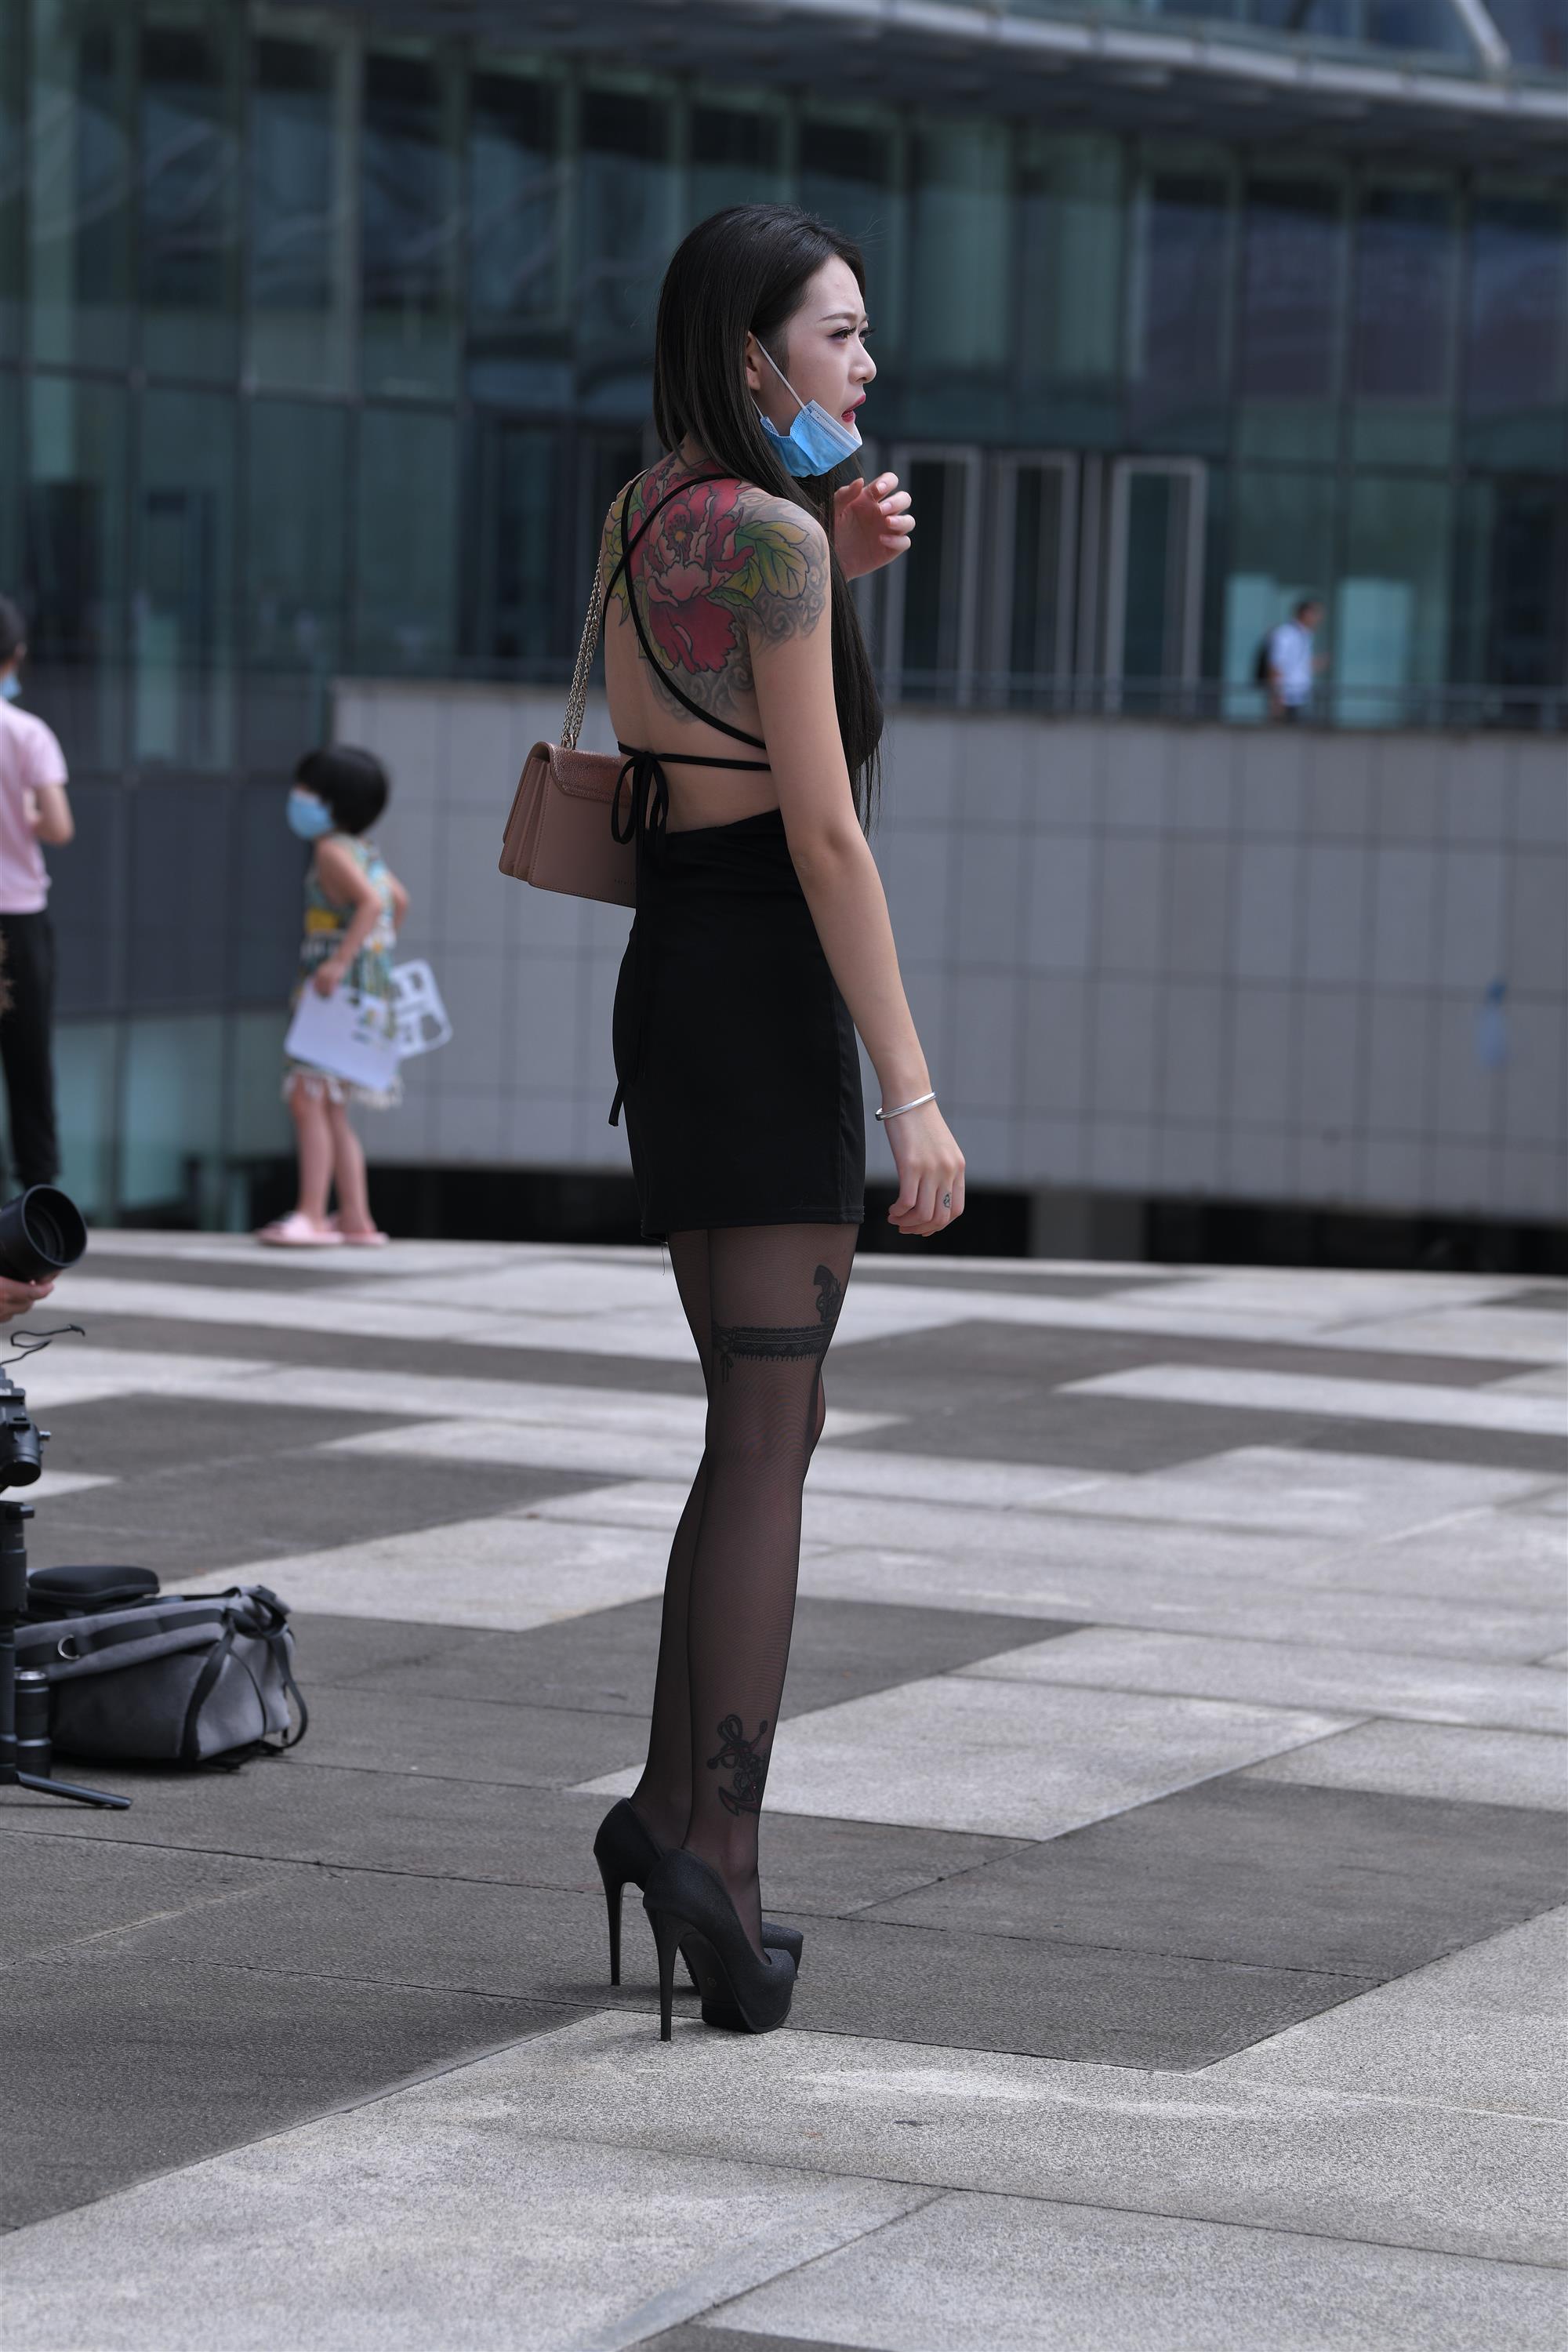 Street black stockings and high heels - 15.jpg